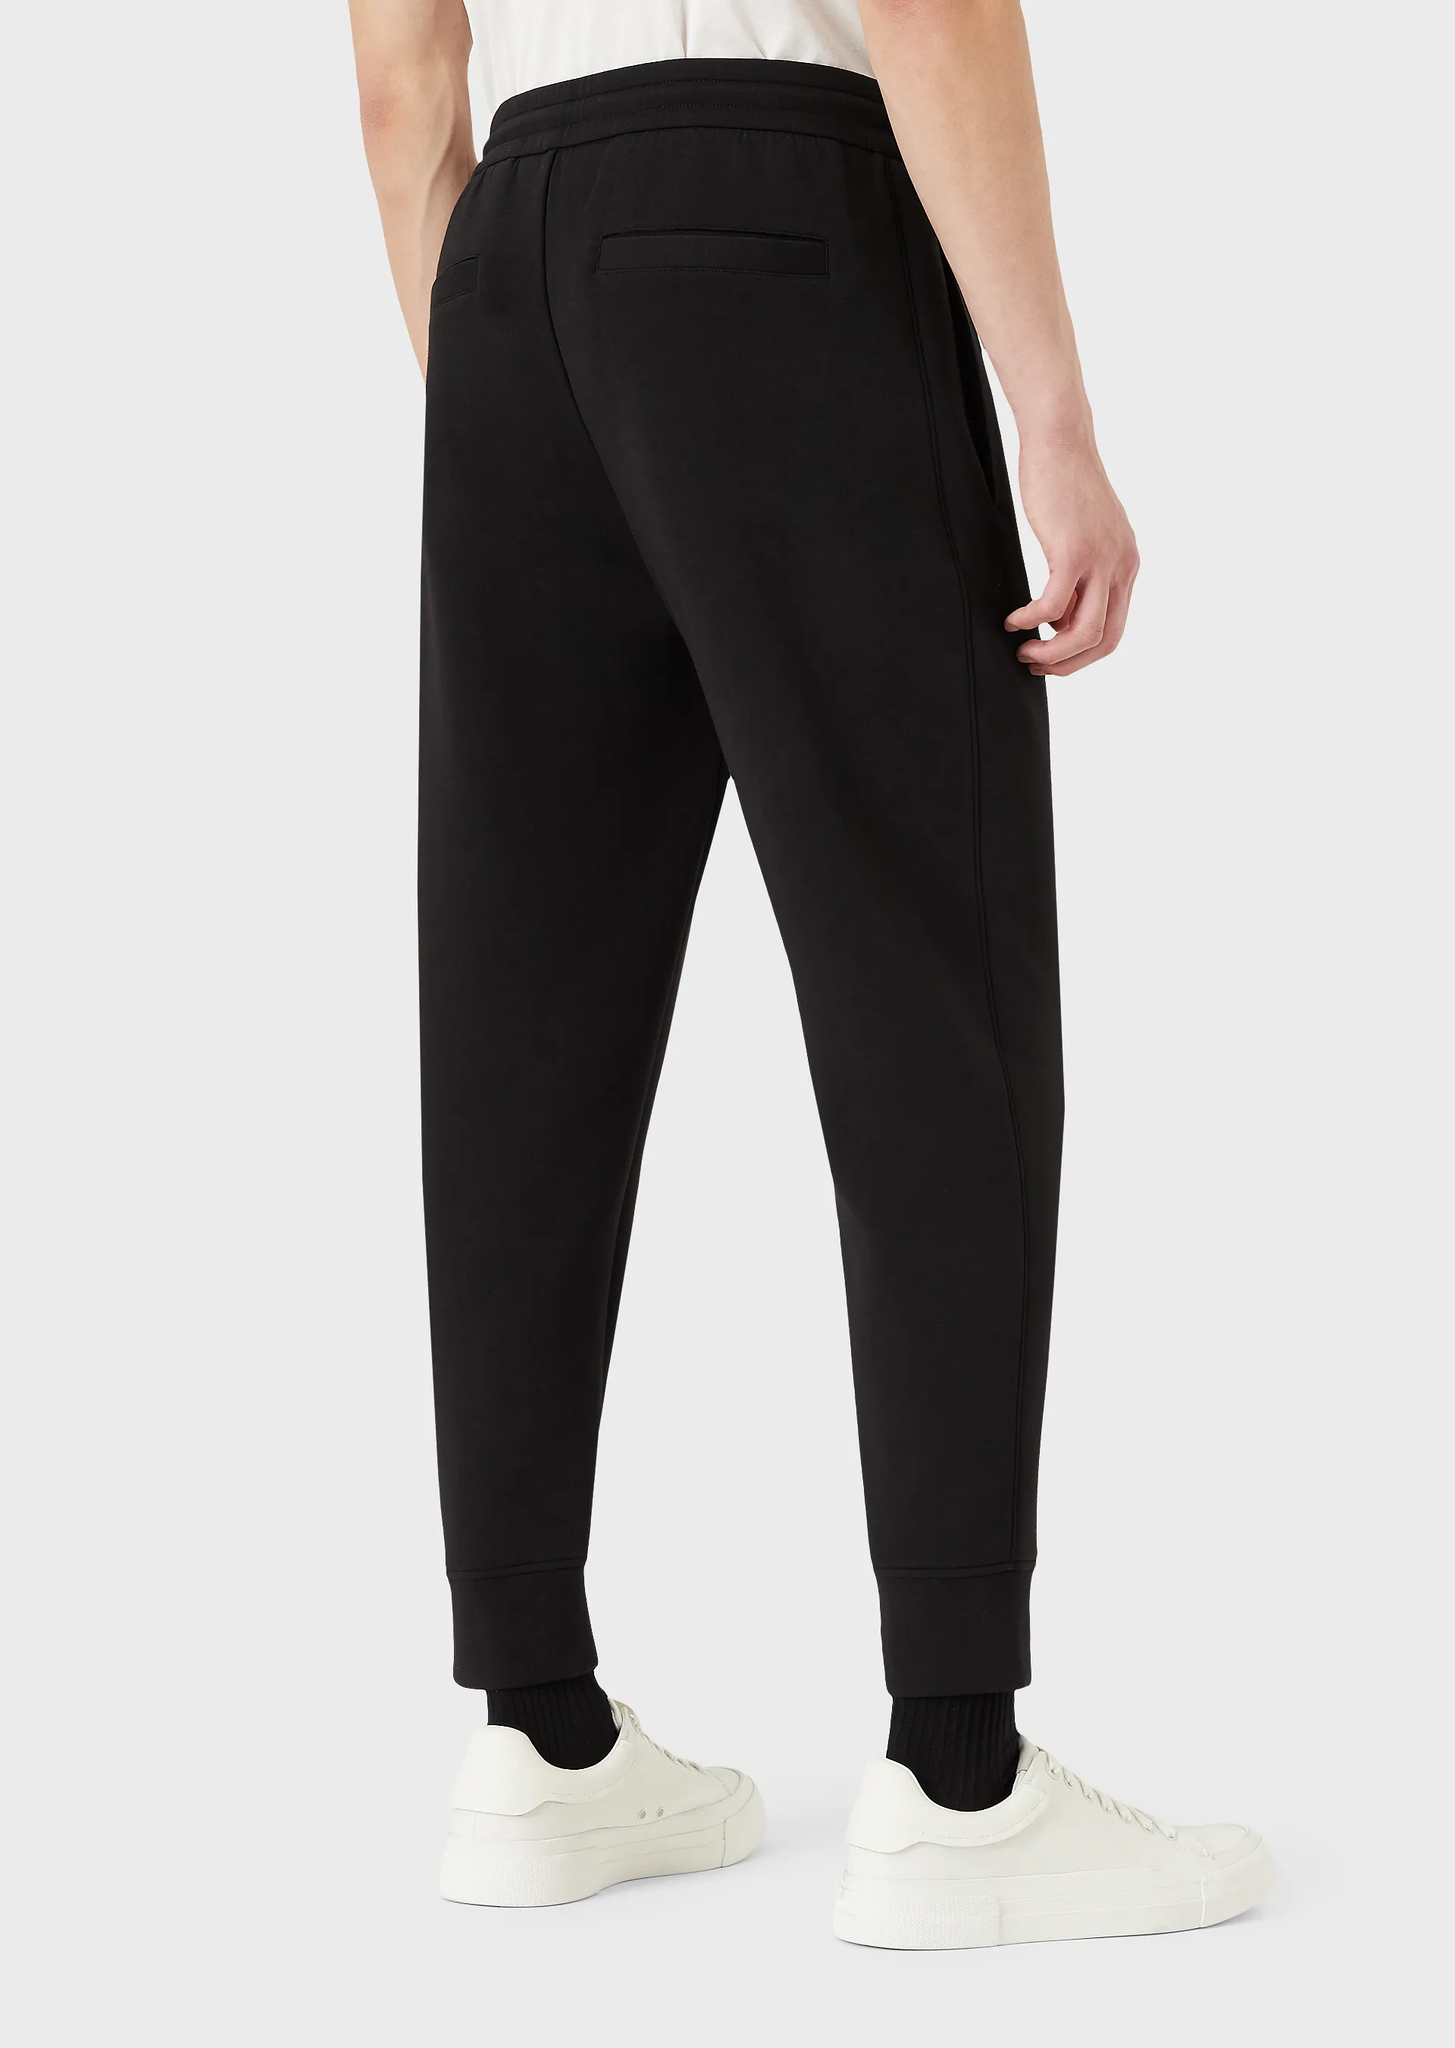 Pantalone Emporio Armani in Tuta / Nero - Ideal Moda